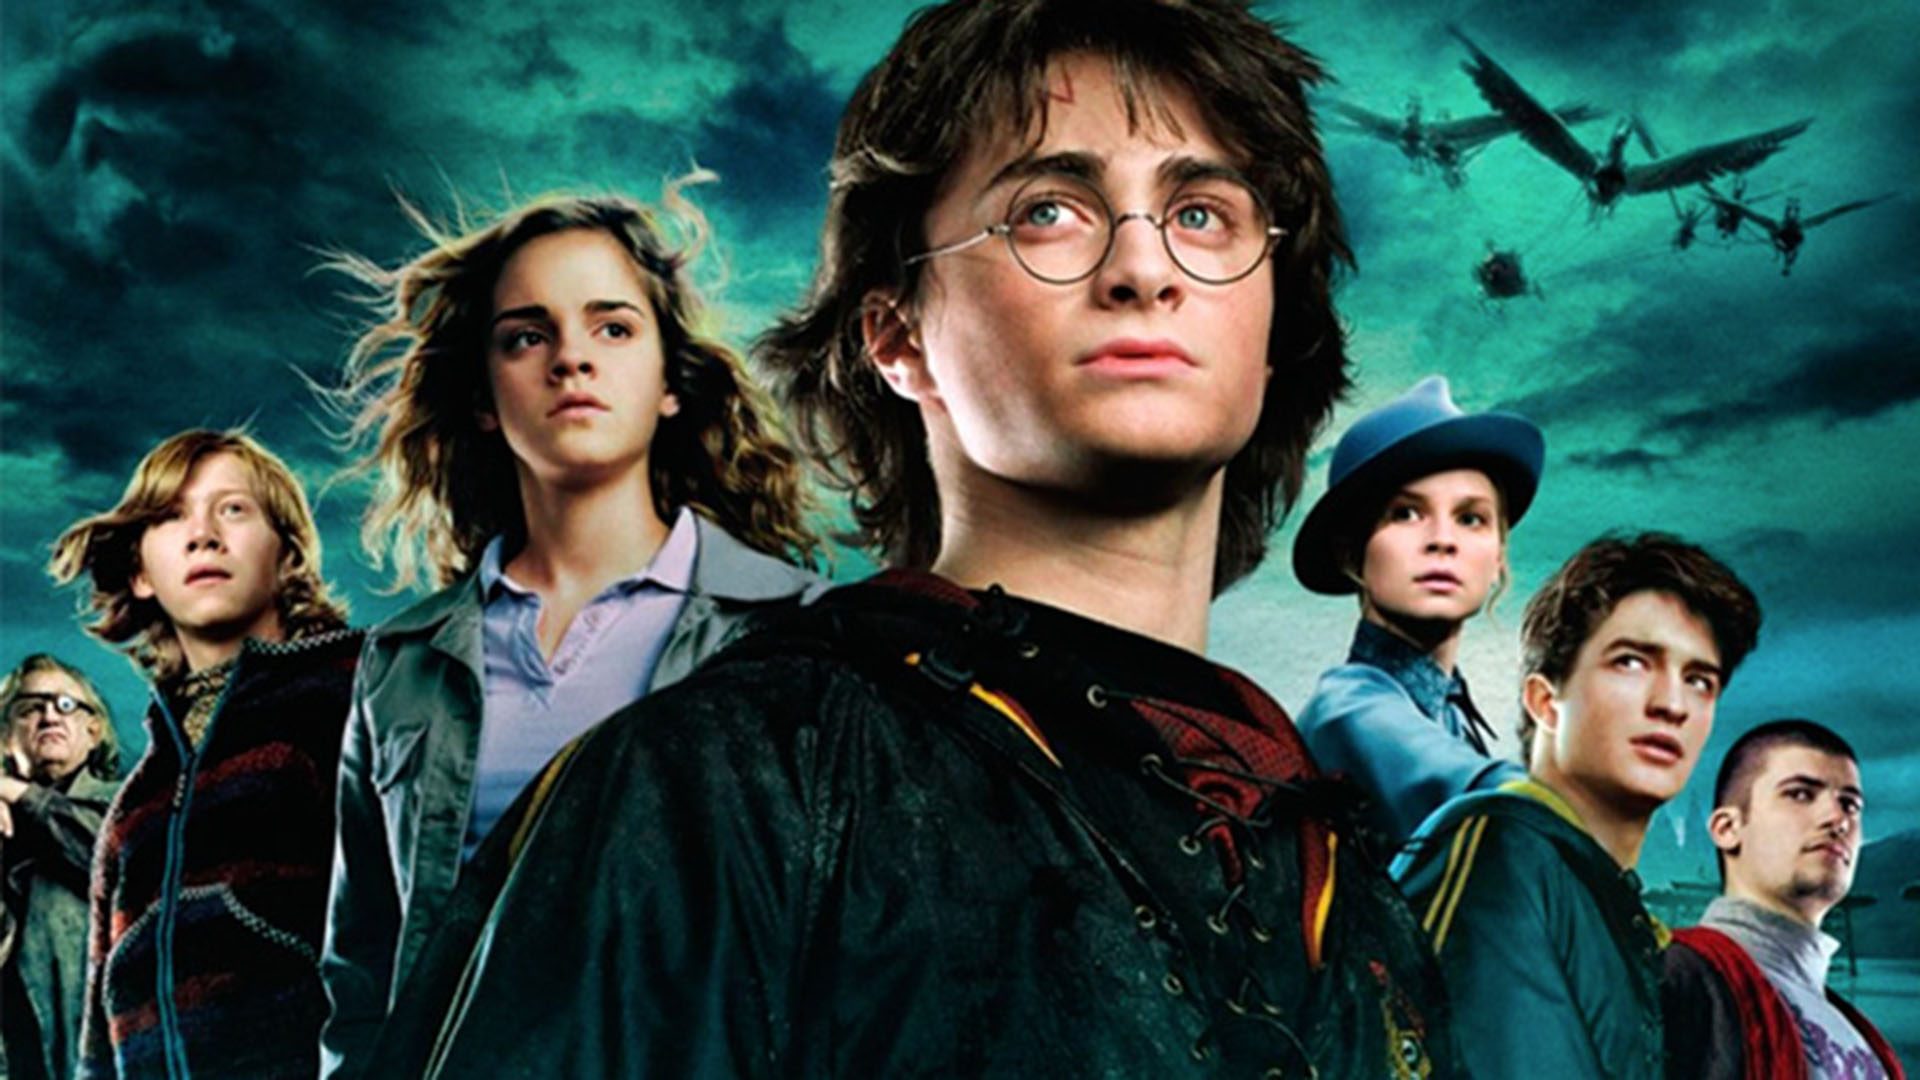 LISTA | 20 curiosidades sobre Harry Potter!